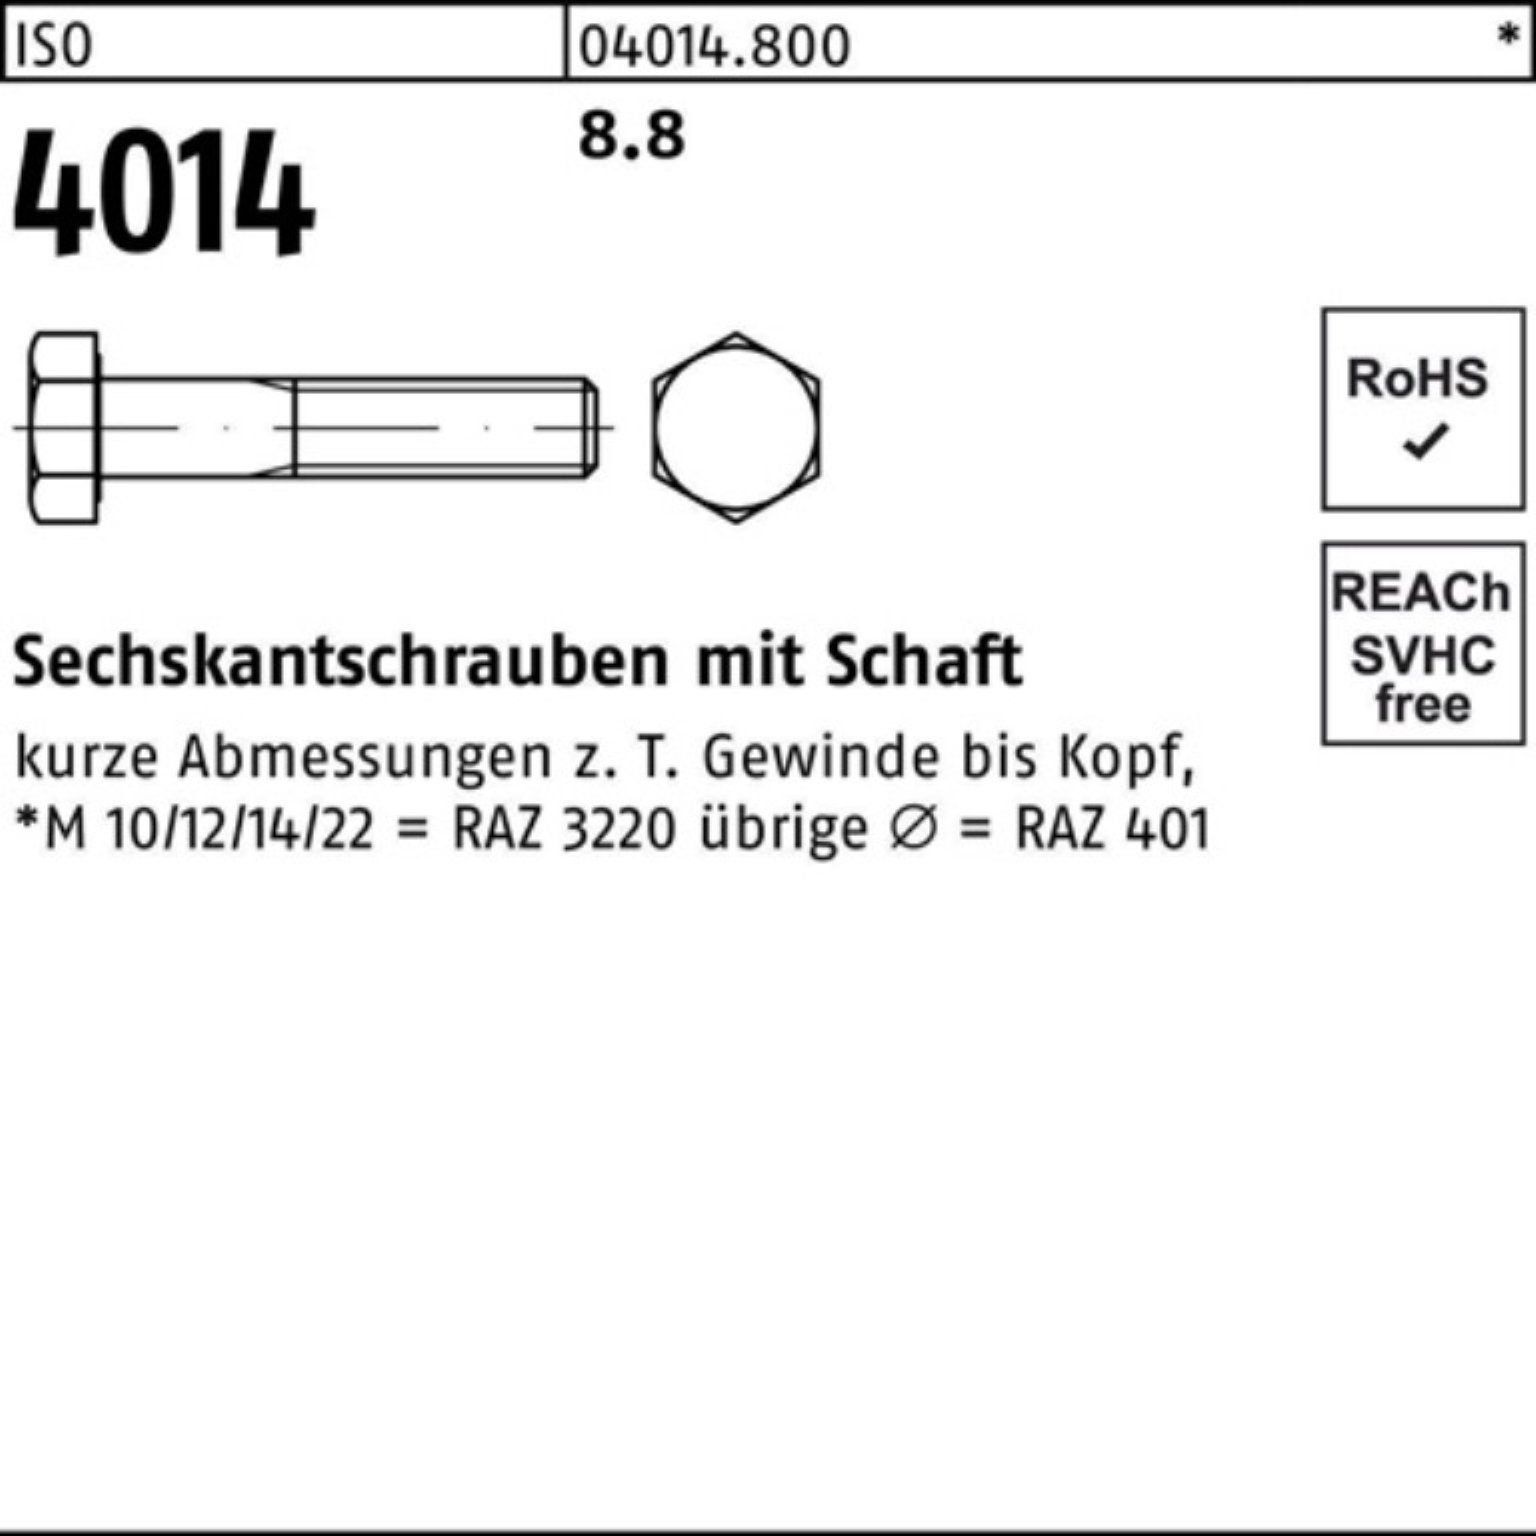 Bufab Sechskantschraube 100er 150 ISO Stück Schaft Pack Sechskantschraube ISO M56x 4014 8.8 1